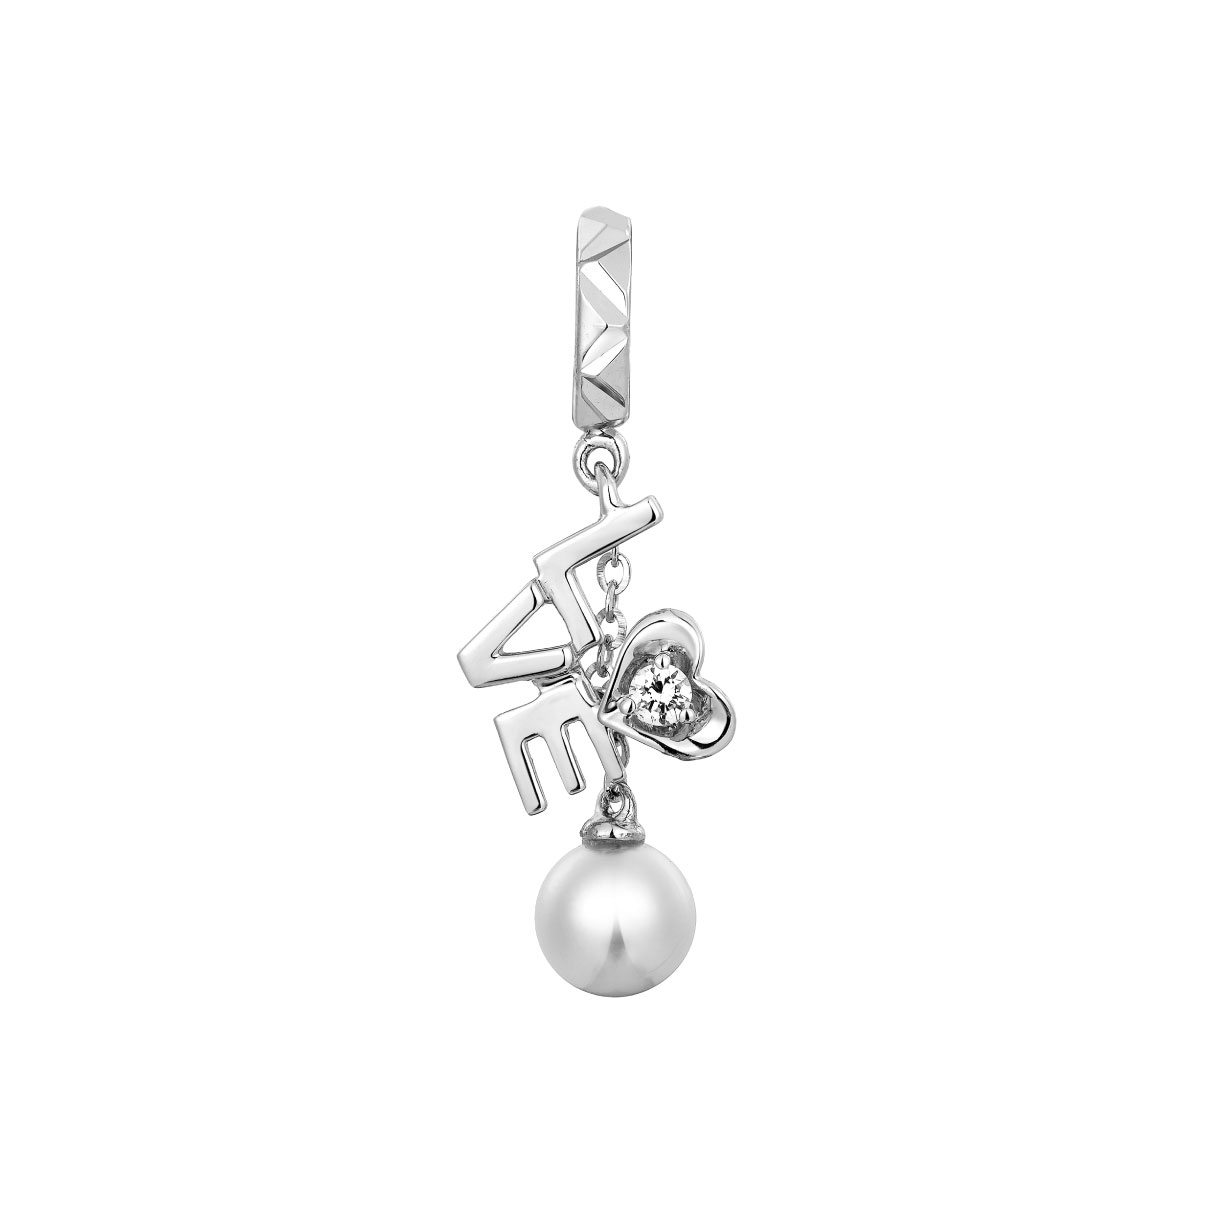 Dear Q "Precious Love" 18K White Gold Diamond Earrings with Pearl